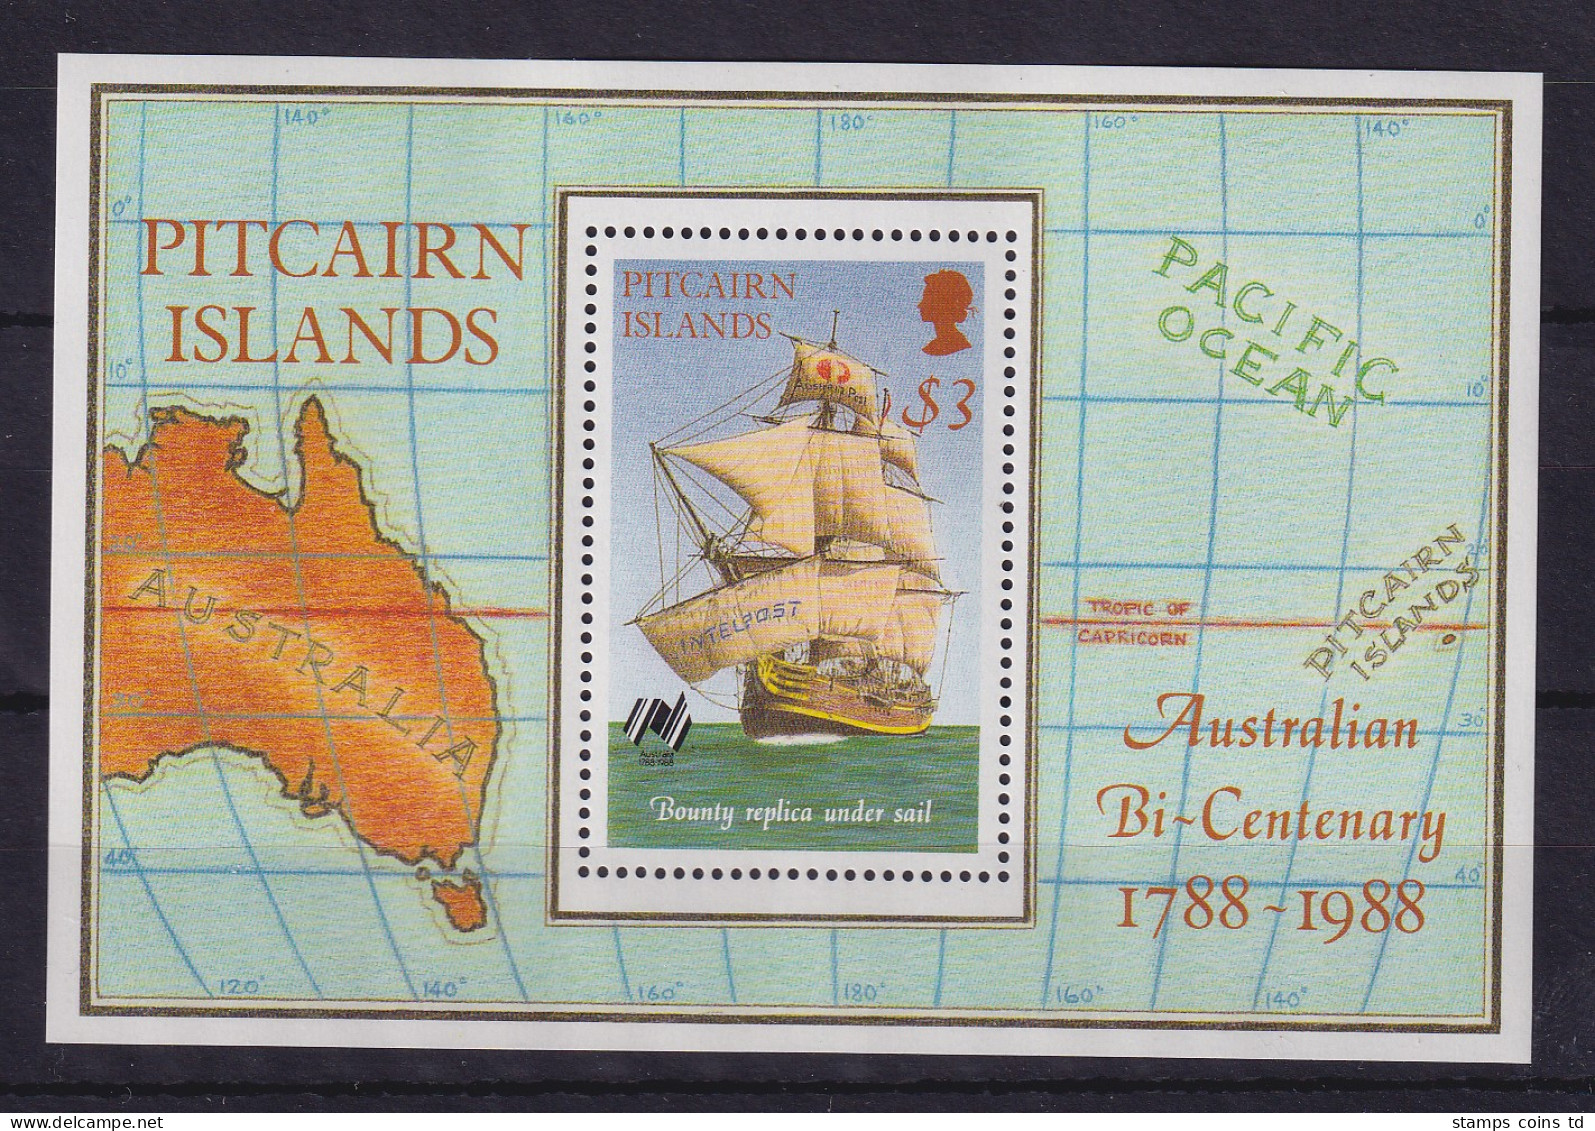 Pitcairn Islands 1988 200-Jahr-Feier Australiens Mi.-Nr. Block 9 Postfrisch ** - Islas De Pitcairn